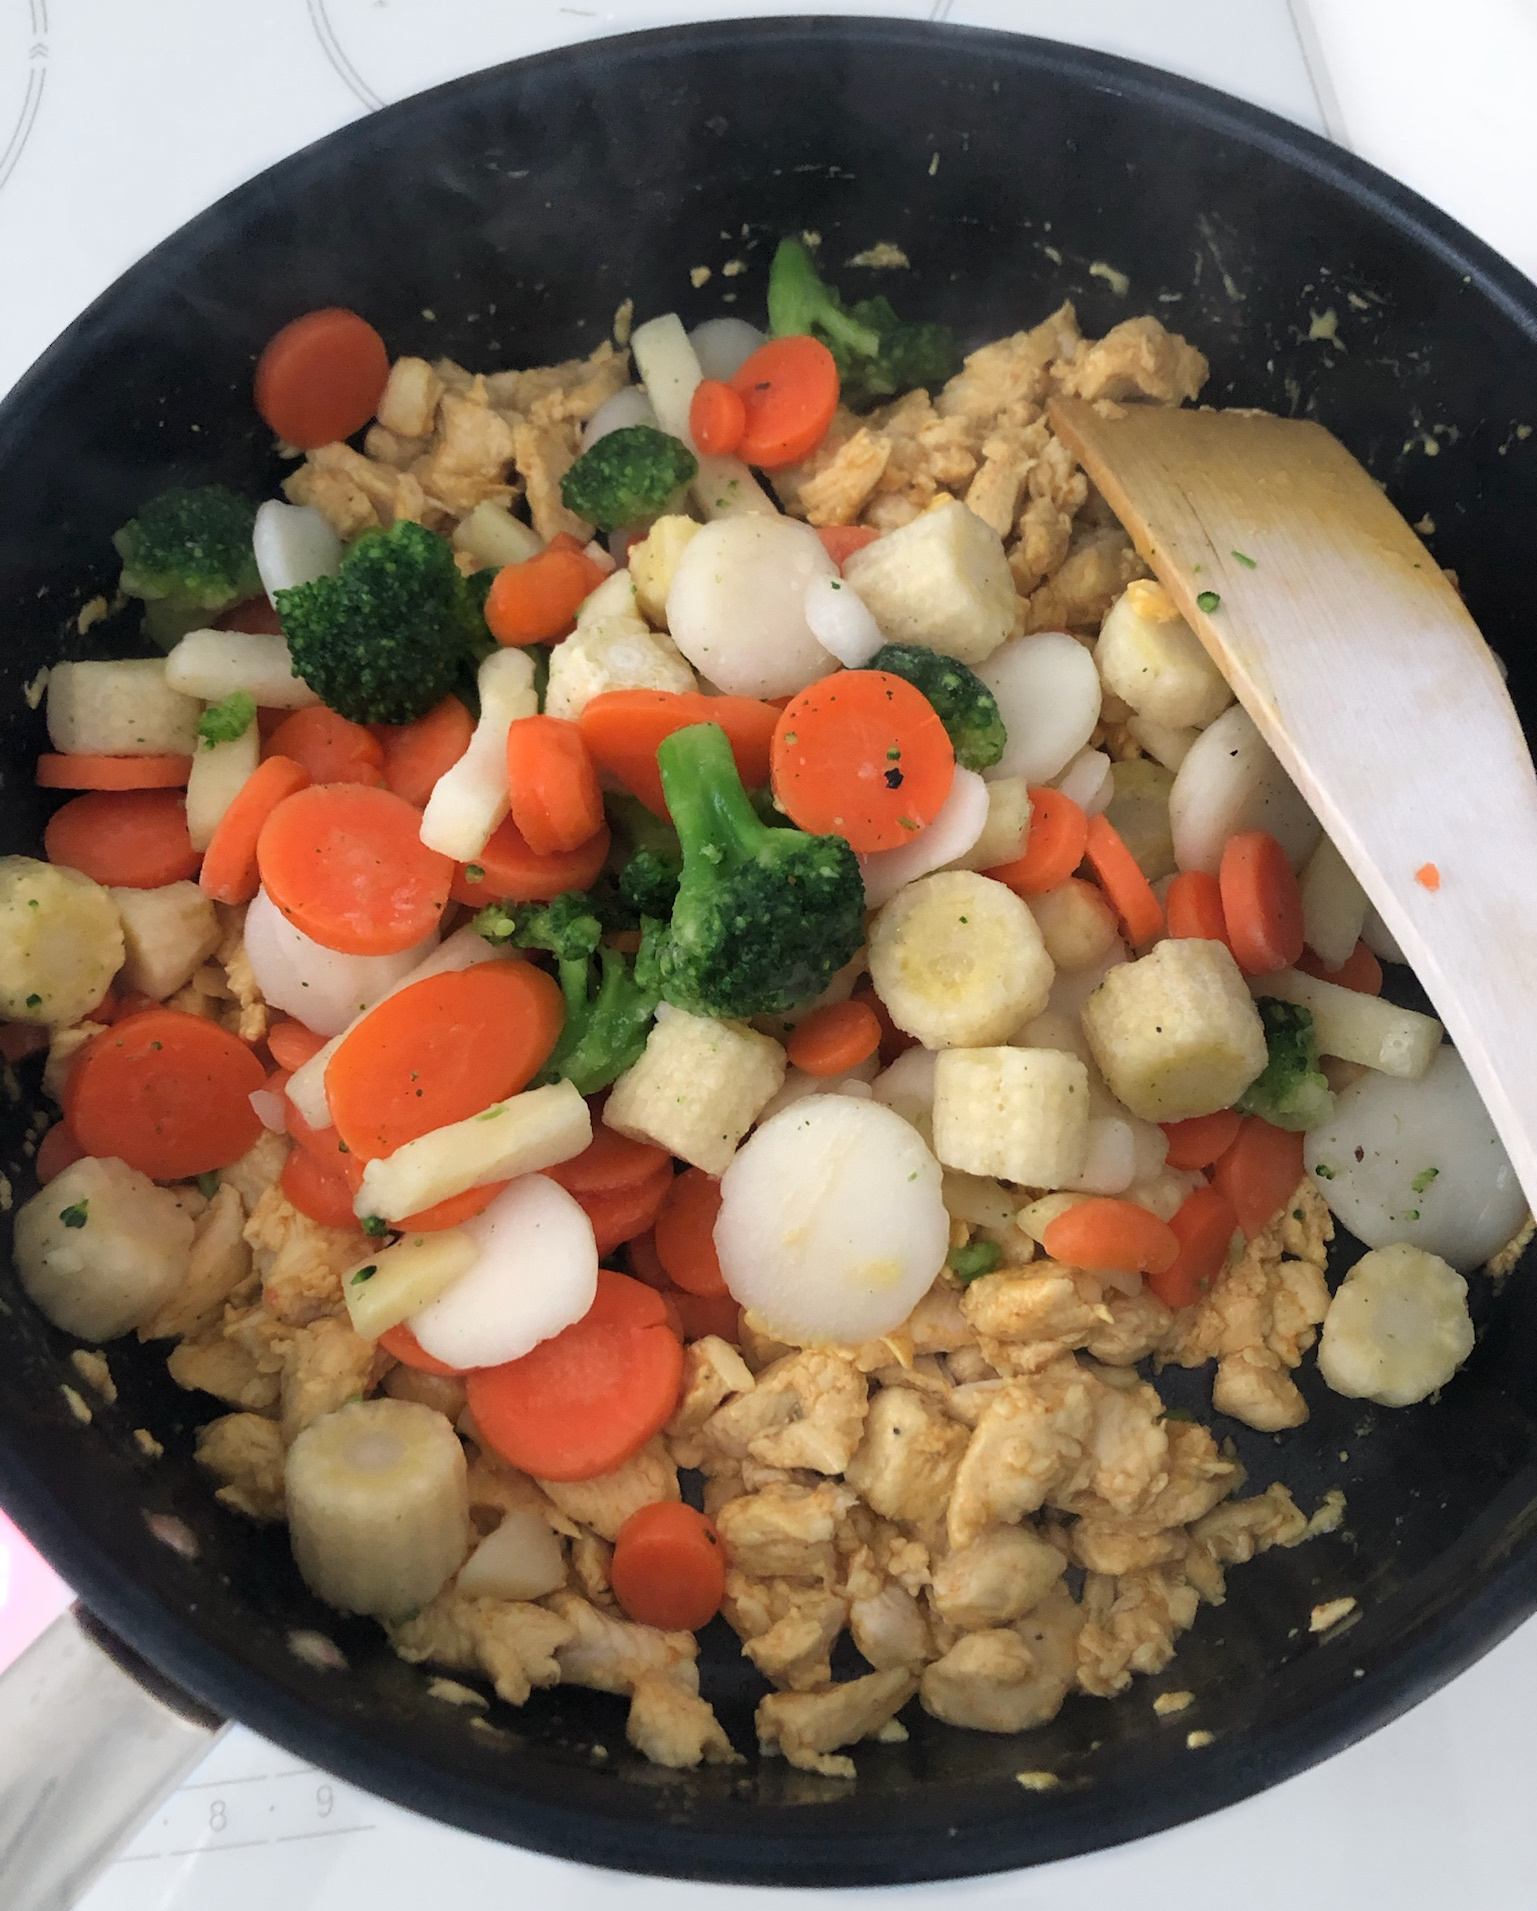 Nopea kana-riisiwokki resepti - Lisää wokkivihannekset ja kypsennä kevyesti sekoitellen